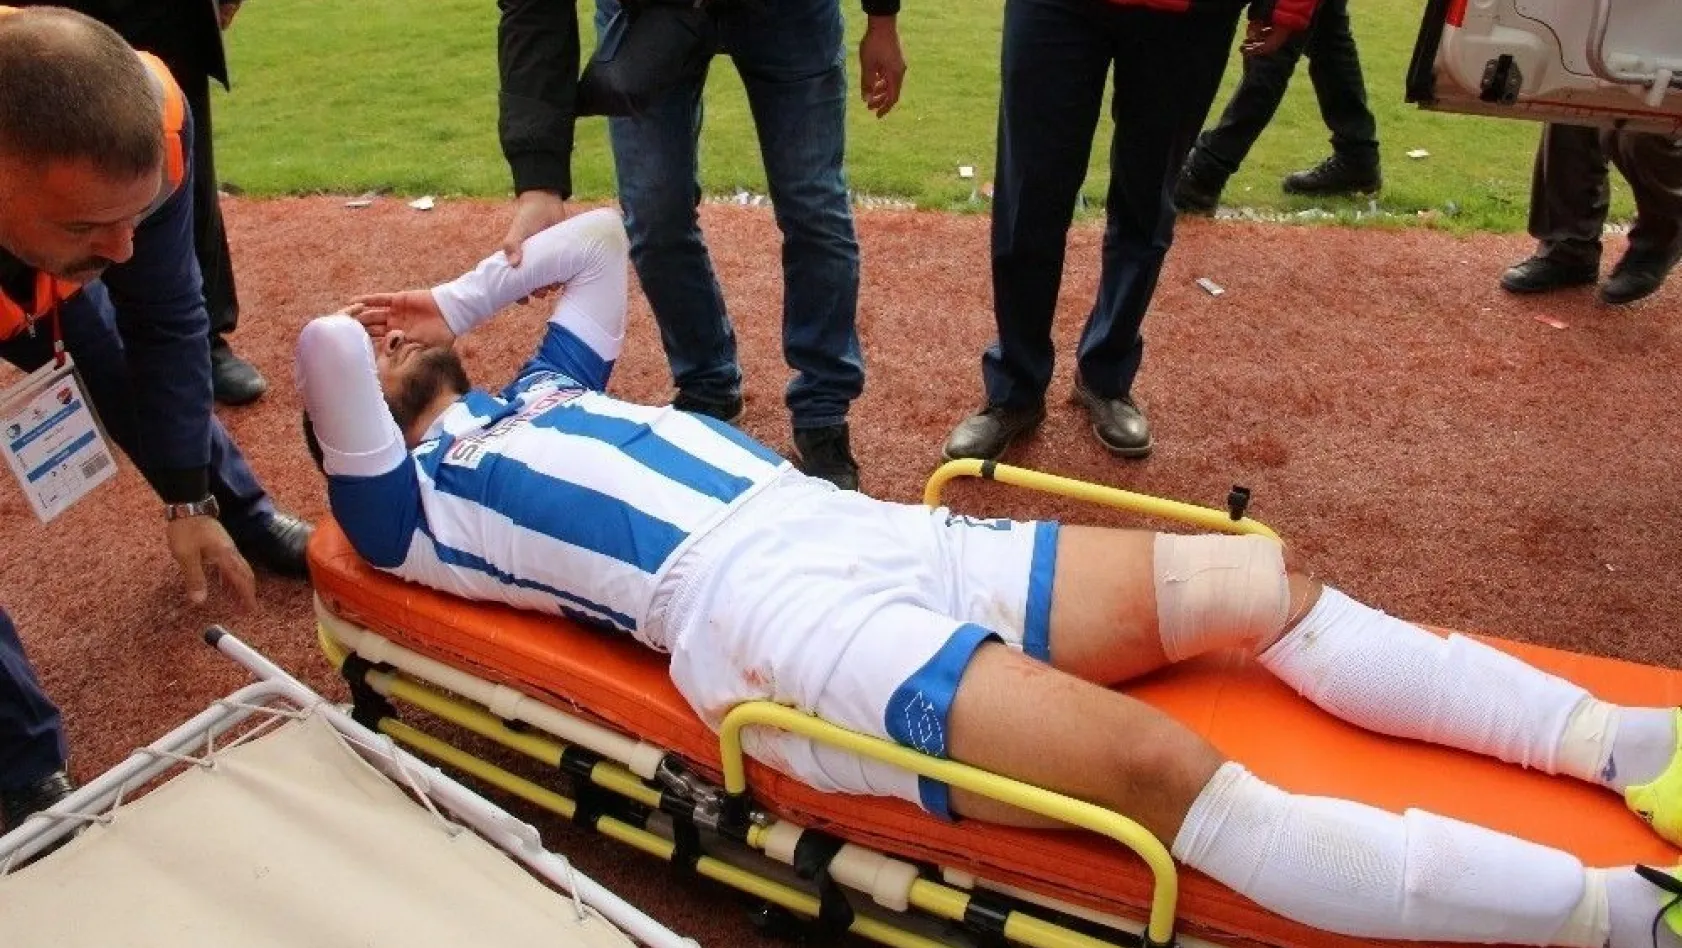 Büyükşehir Belediye Erzurumspor oyuncusu Erdem Koçal sakatlandı
